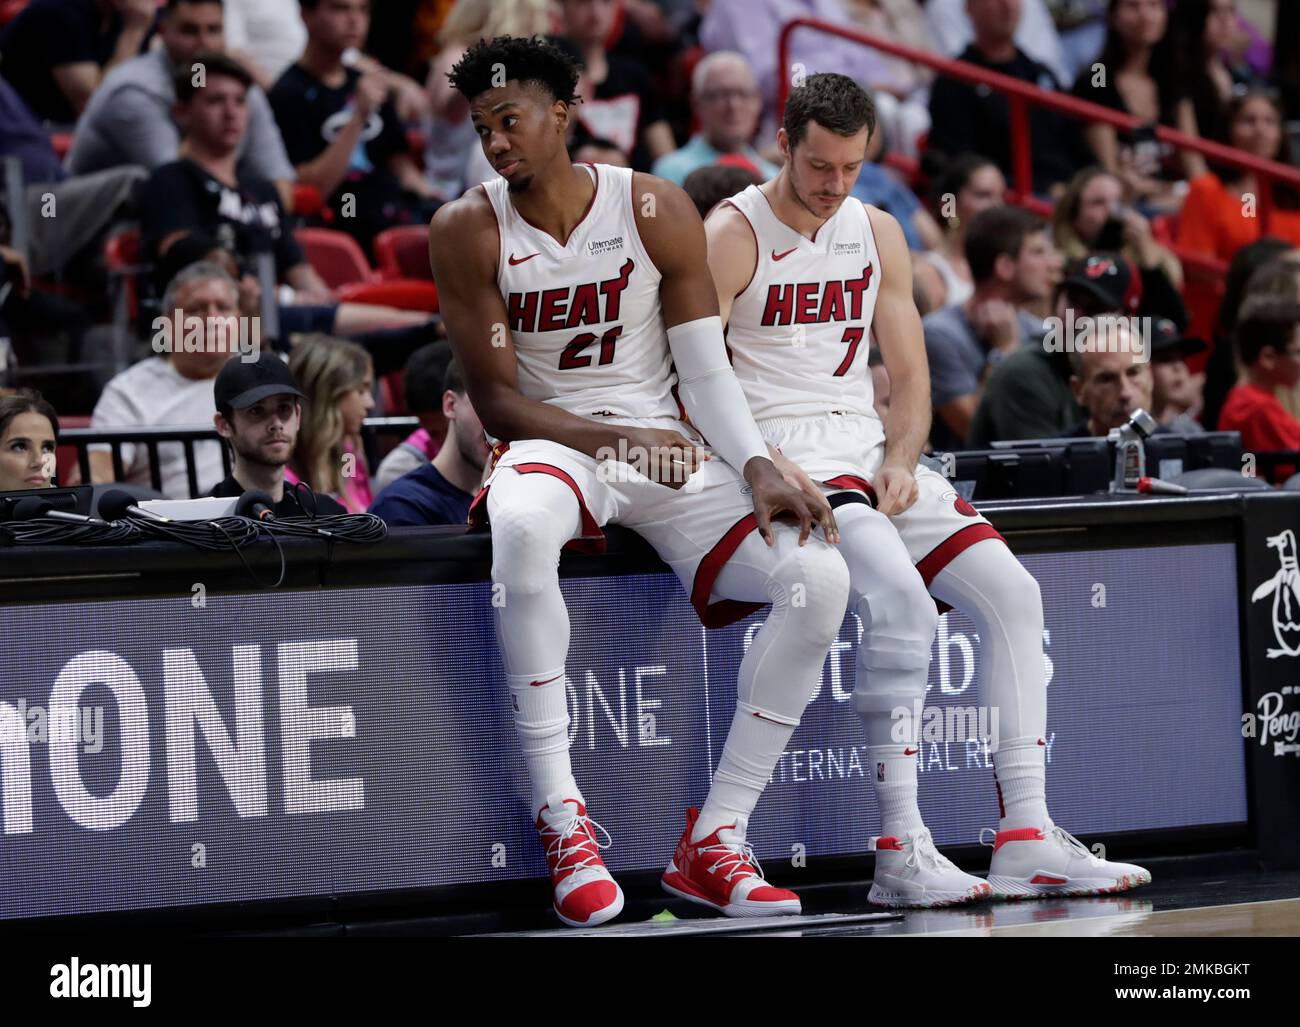 Miami Heat: What's next for Hassan Whiteside?